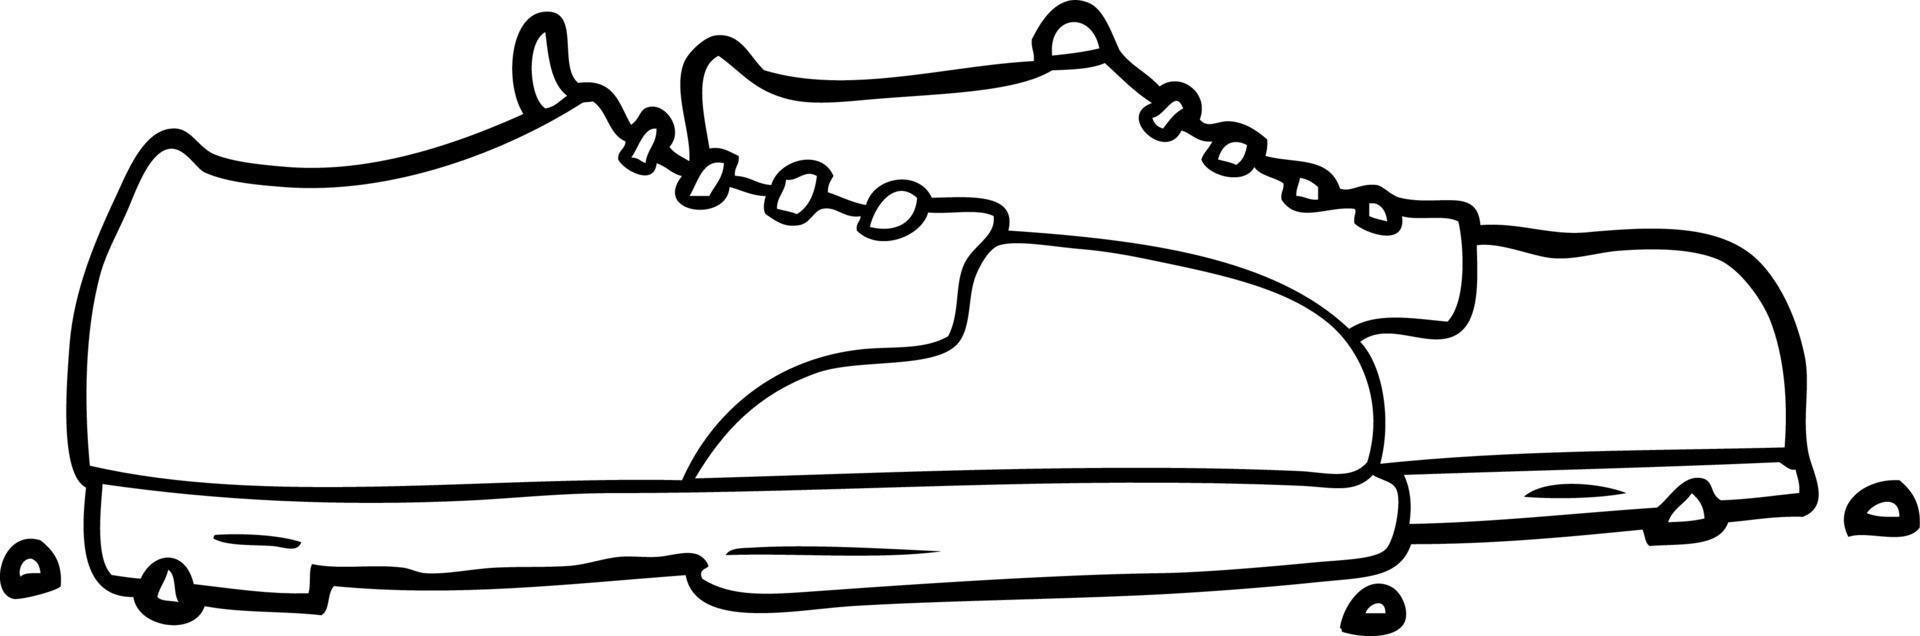 desenho de linha de sapatos velhos vetor